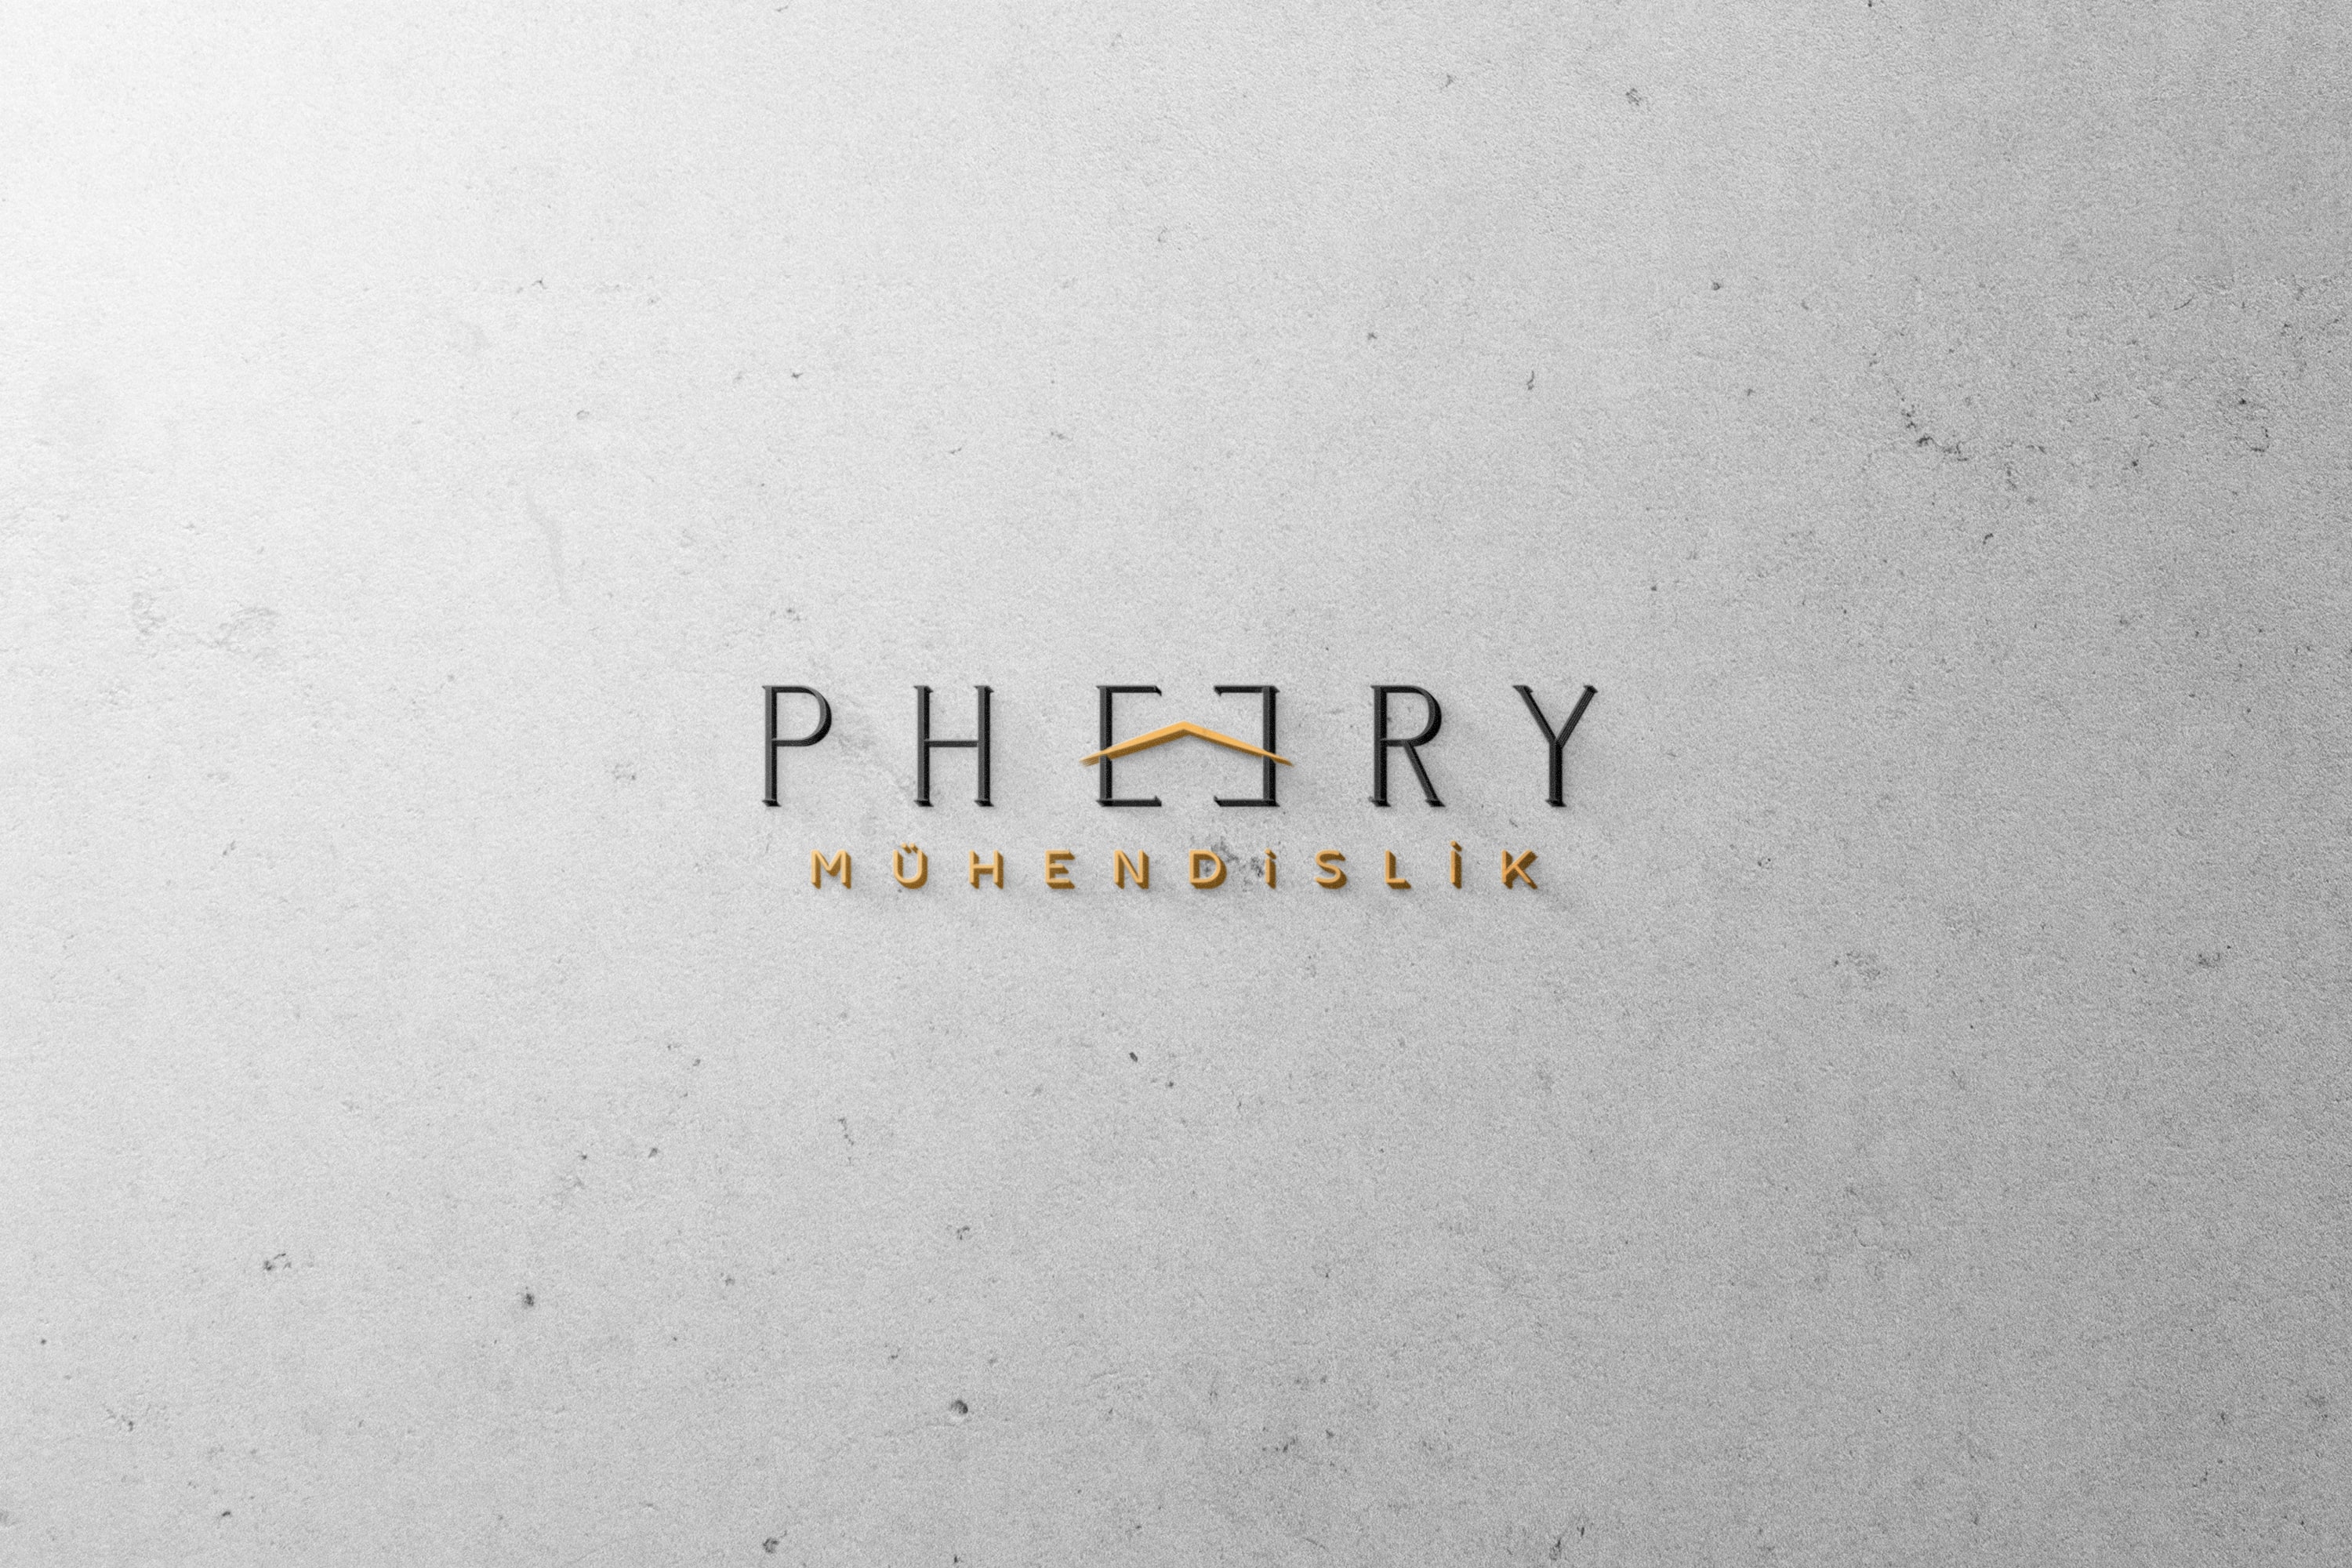 Pheery